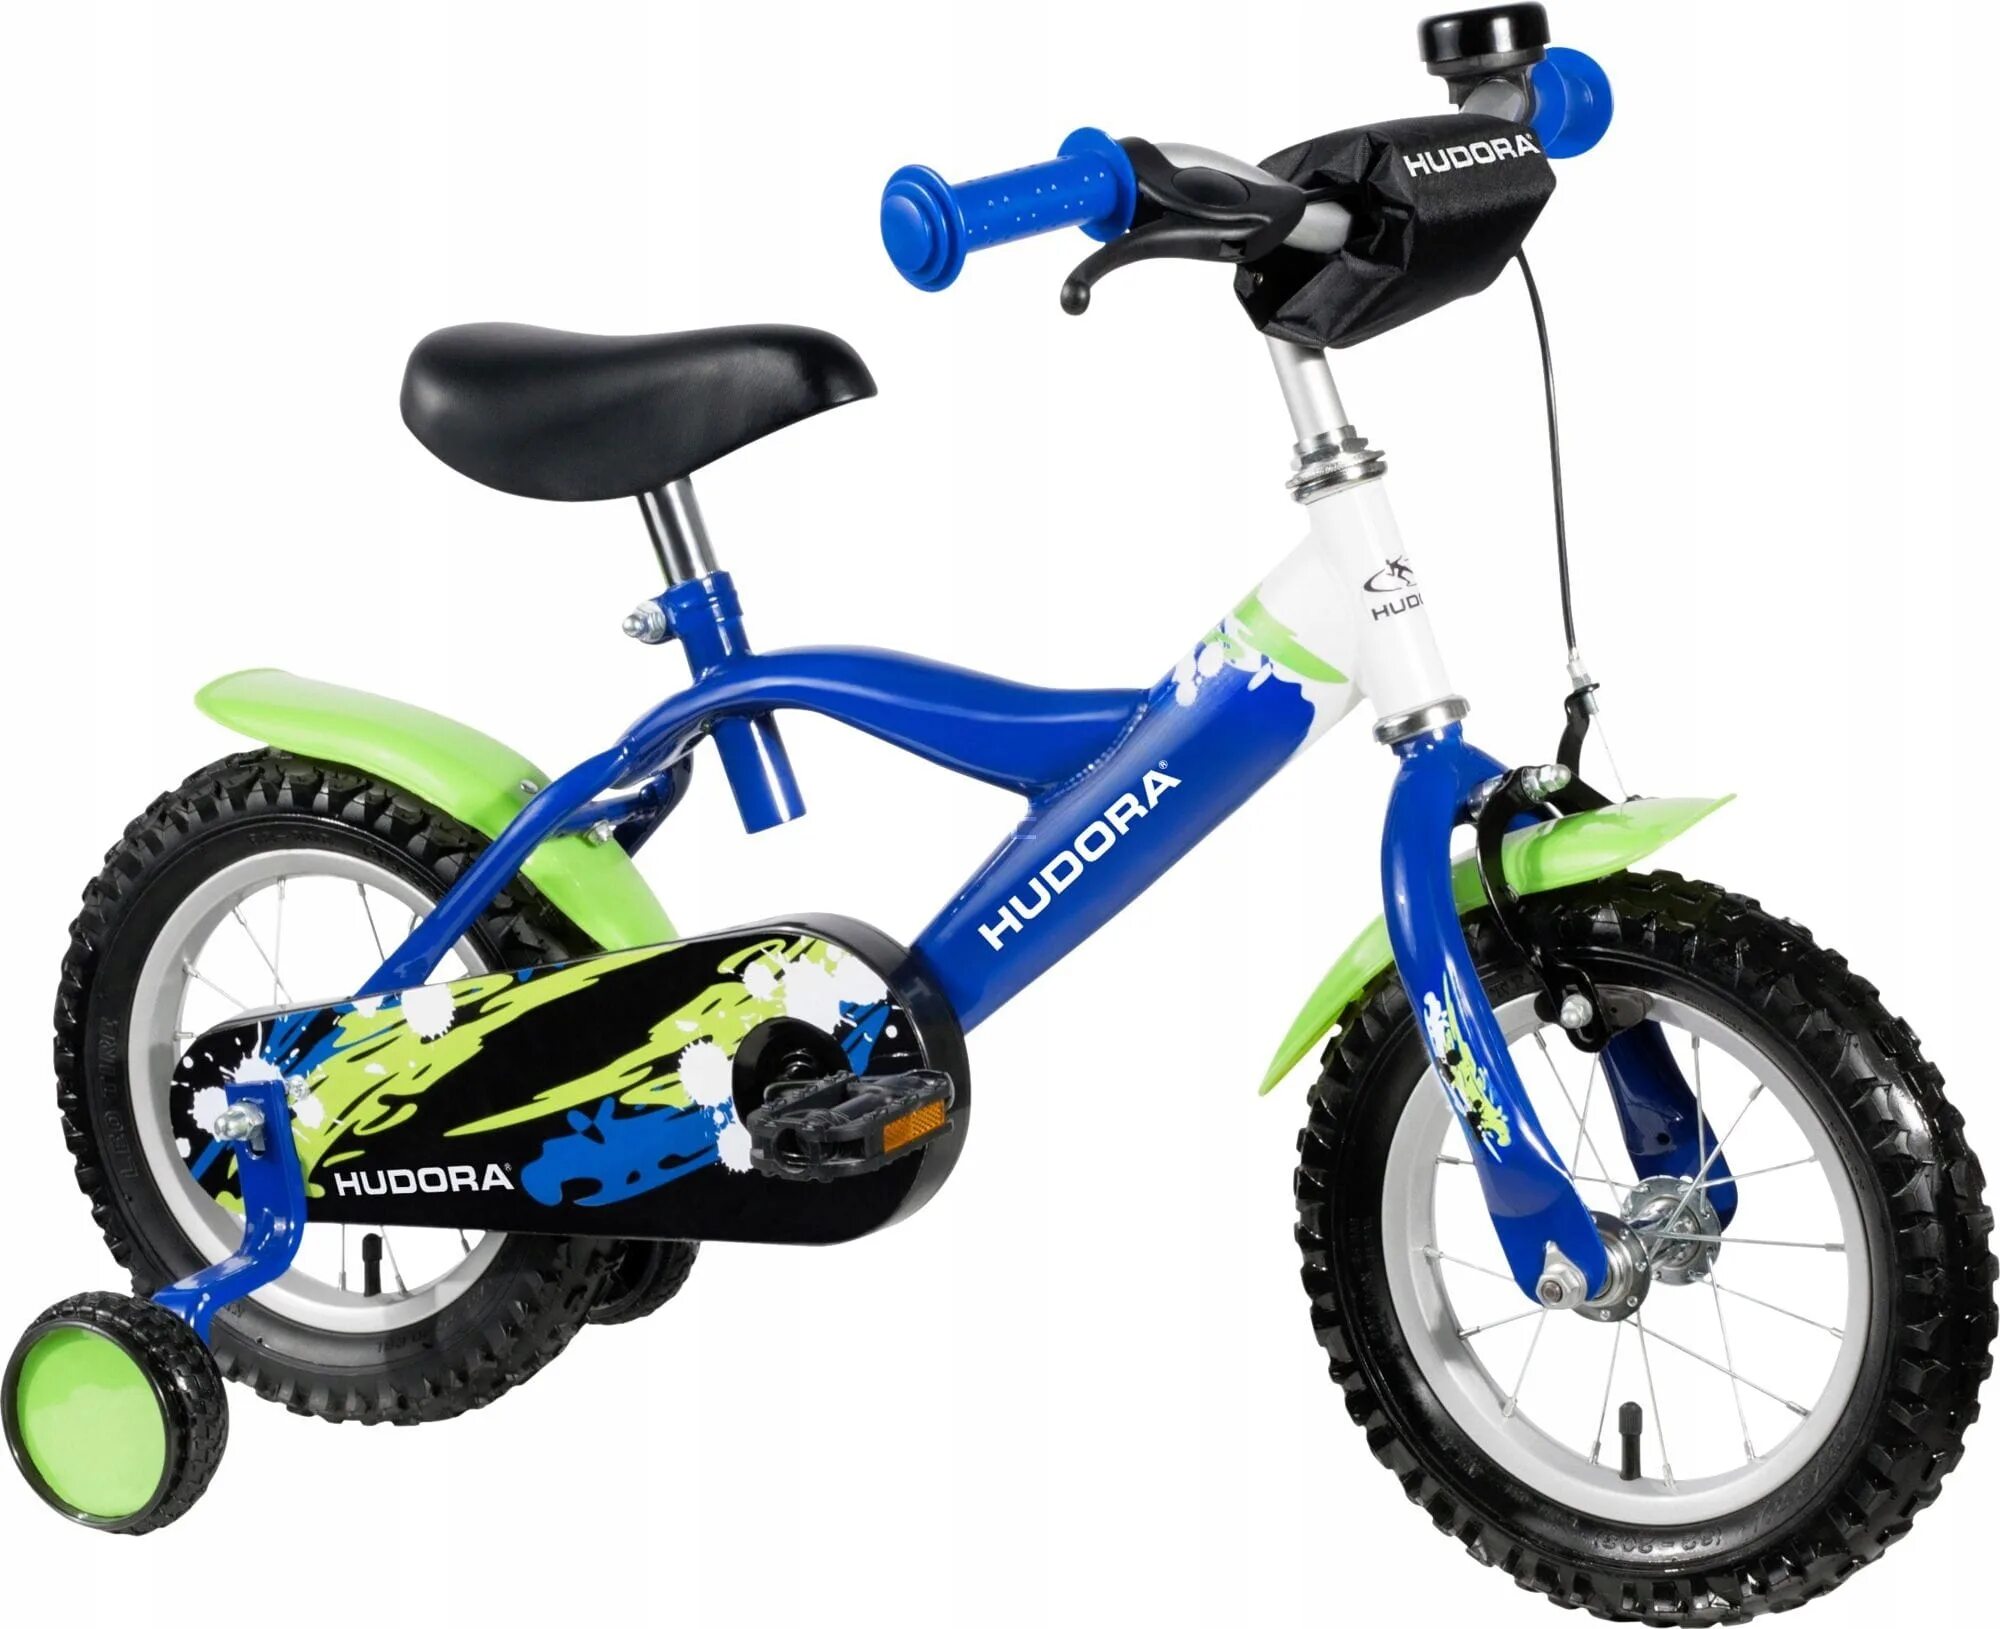 Велосипед 12 дюймов на какой возраст. Велосипед Hudora 12. Green Bike велосипед 12 дюймов. Велосипед 12 дюймов синий. Велосипед 12 дюймов зеленый.